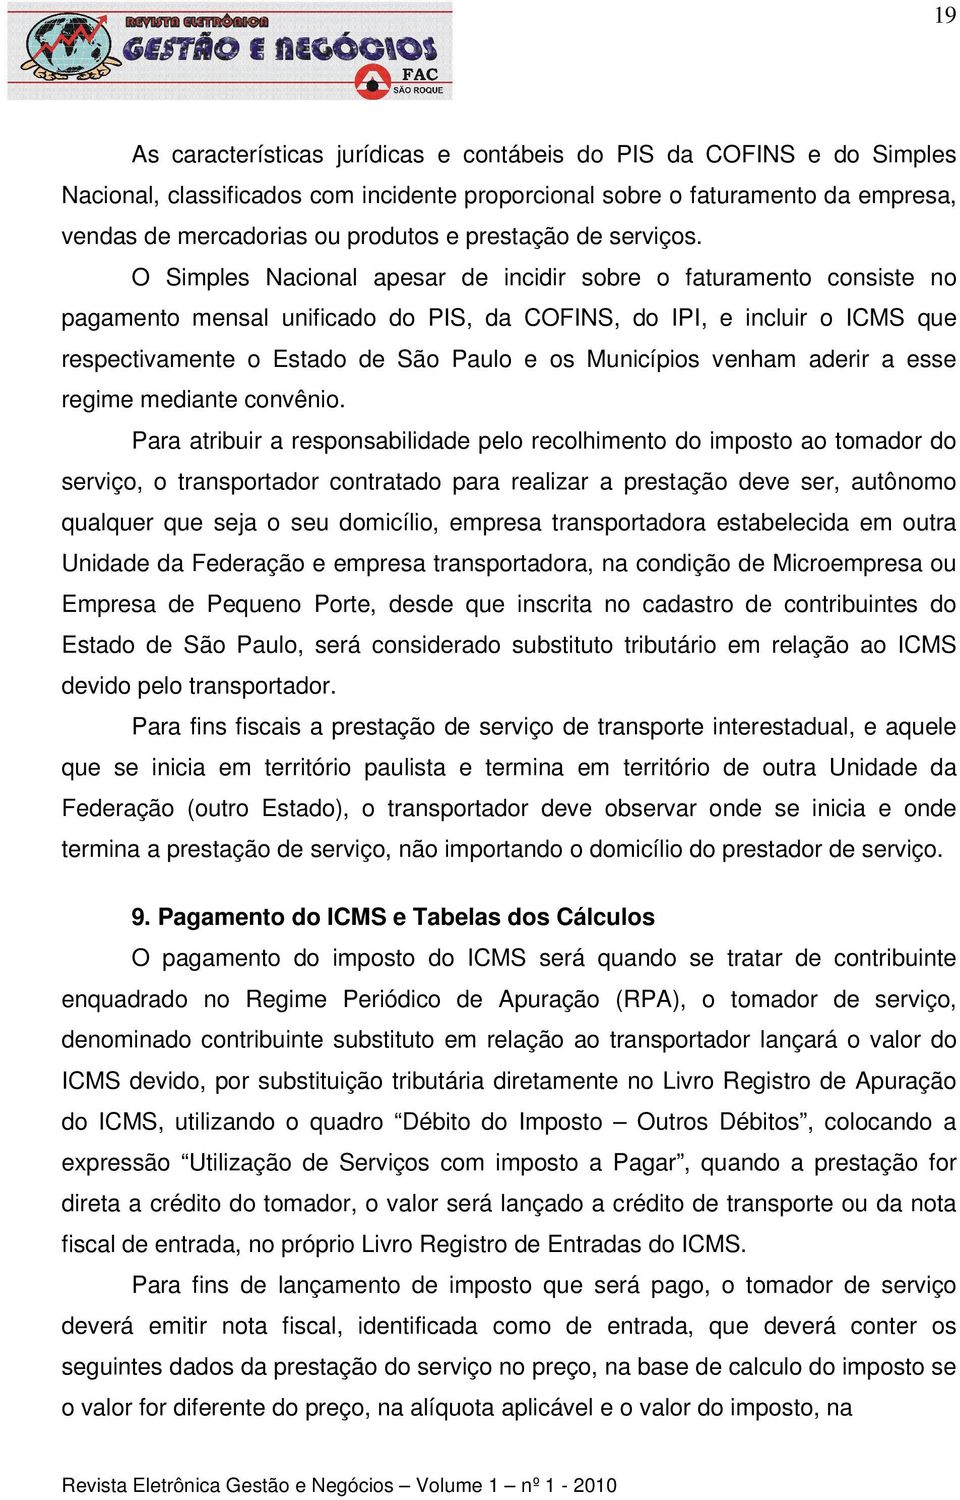 O Simples Nacional apesar de incidir sobre o faturamento consiste no pagamento mensal unificado do PIS, da COFINS, do IPI, e incluir o ICMS que respectivamente o Estado de São Paulo e os Municípios